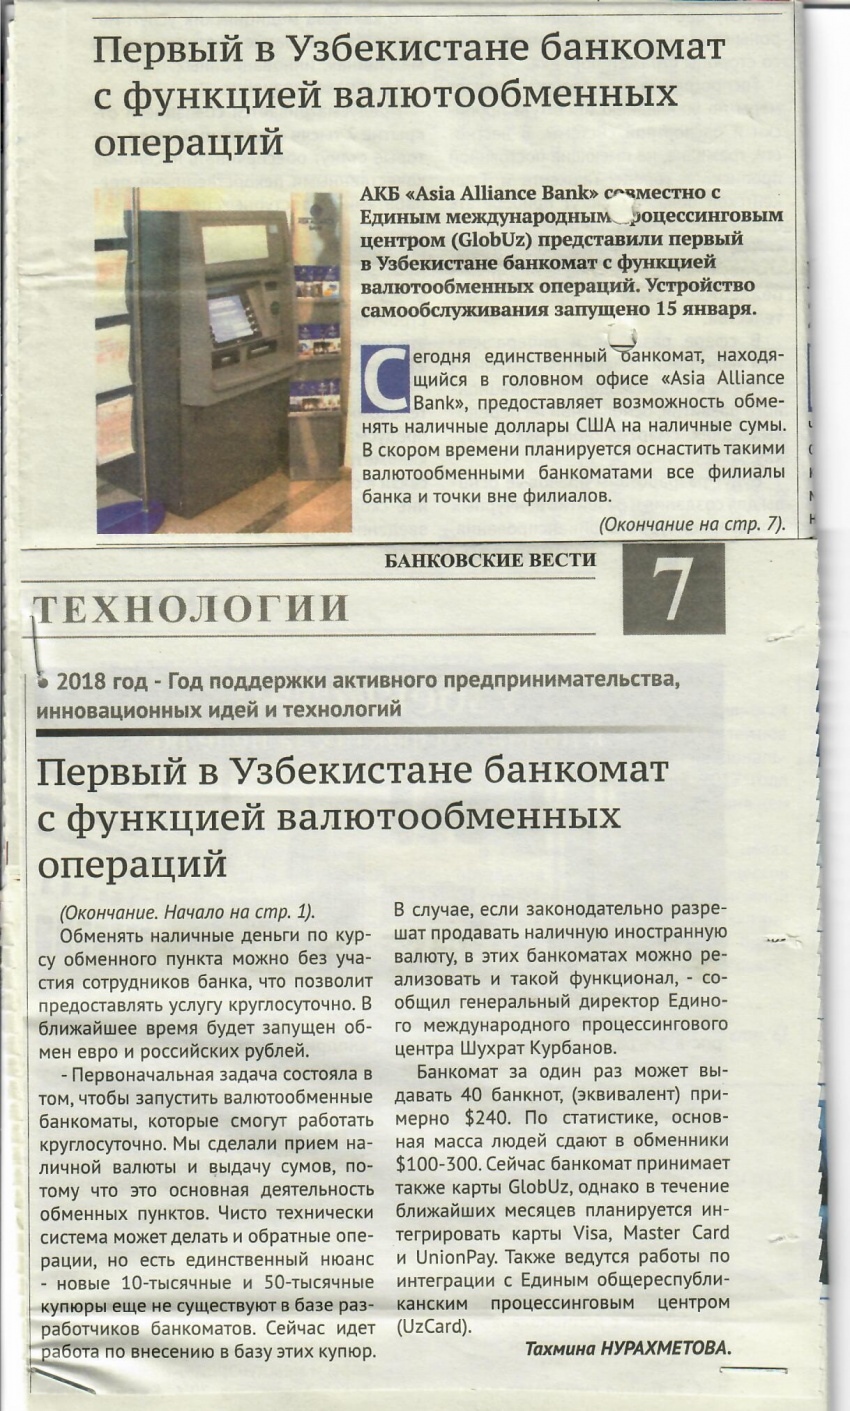 Первый в Узбекистане банкомат с функцией валютообменных операций. ( газета Банковские Вести)